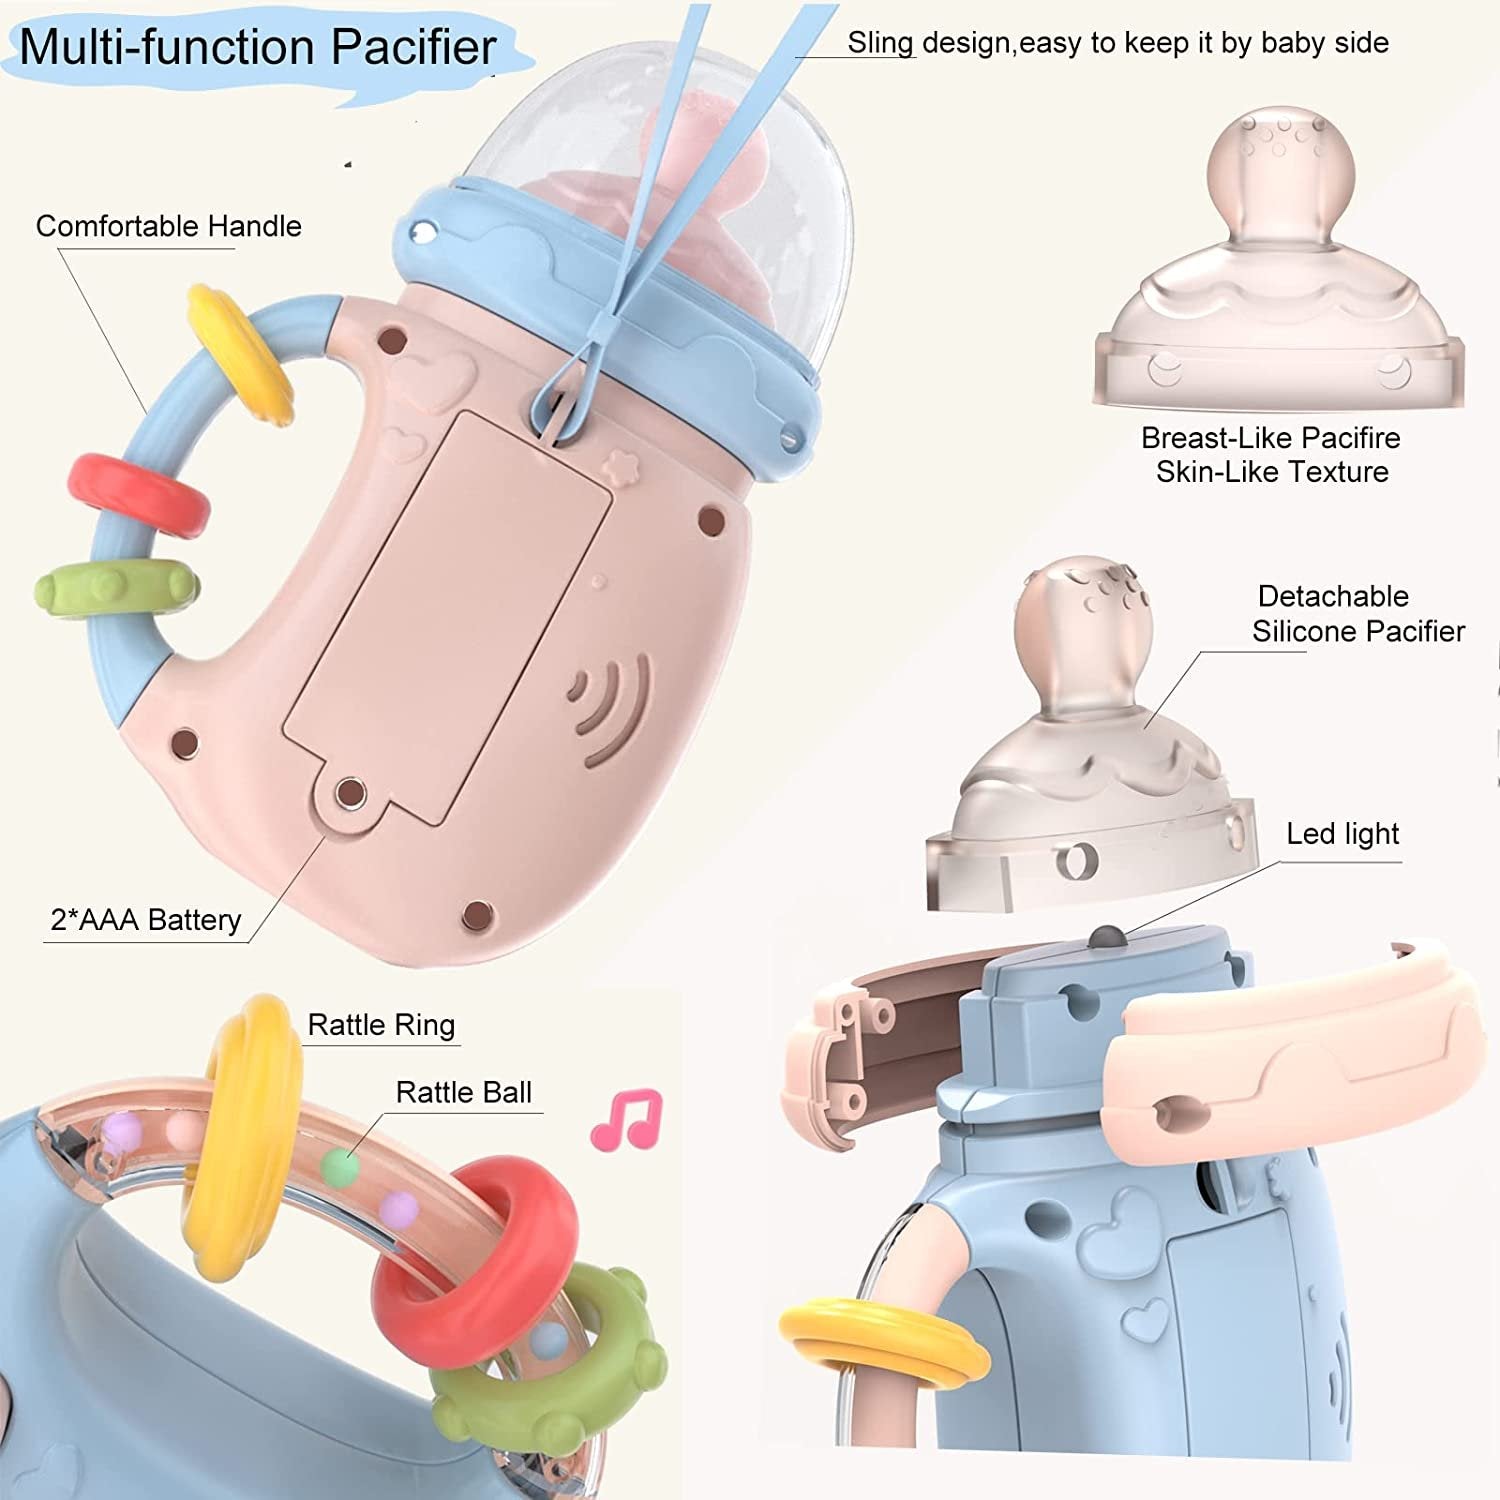 Dziecięce Zabawki Sensoryczne 4 W 1 Silikonowy Smoczek + Grzechotki + Świecące + Gryzak